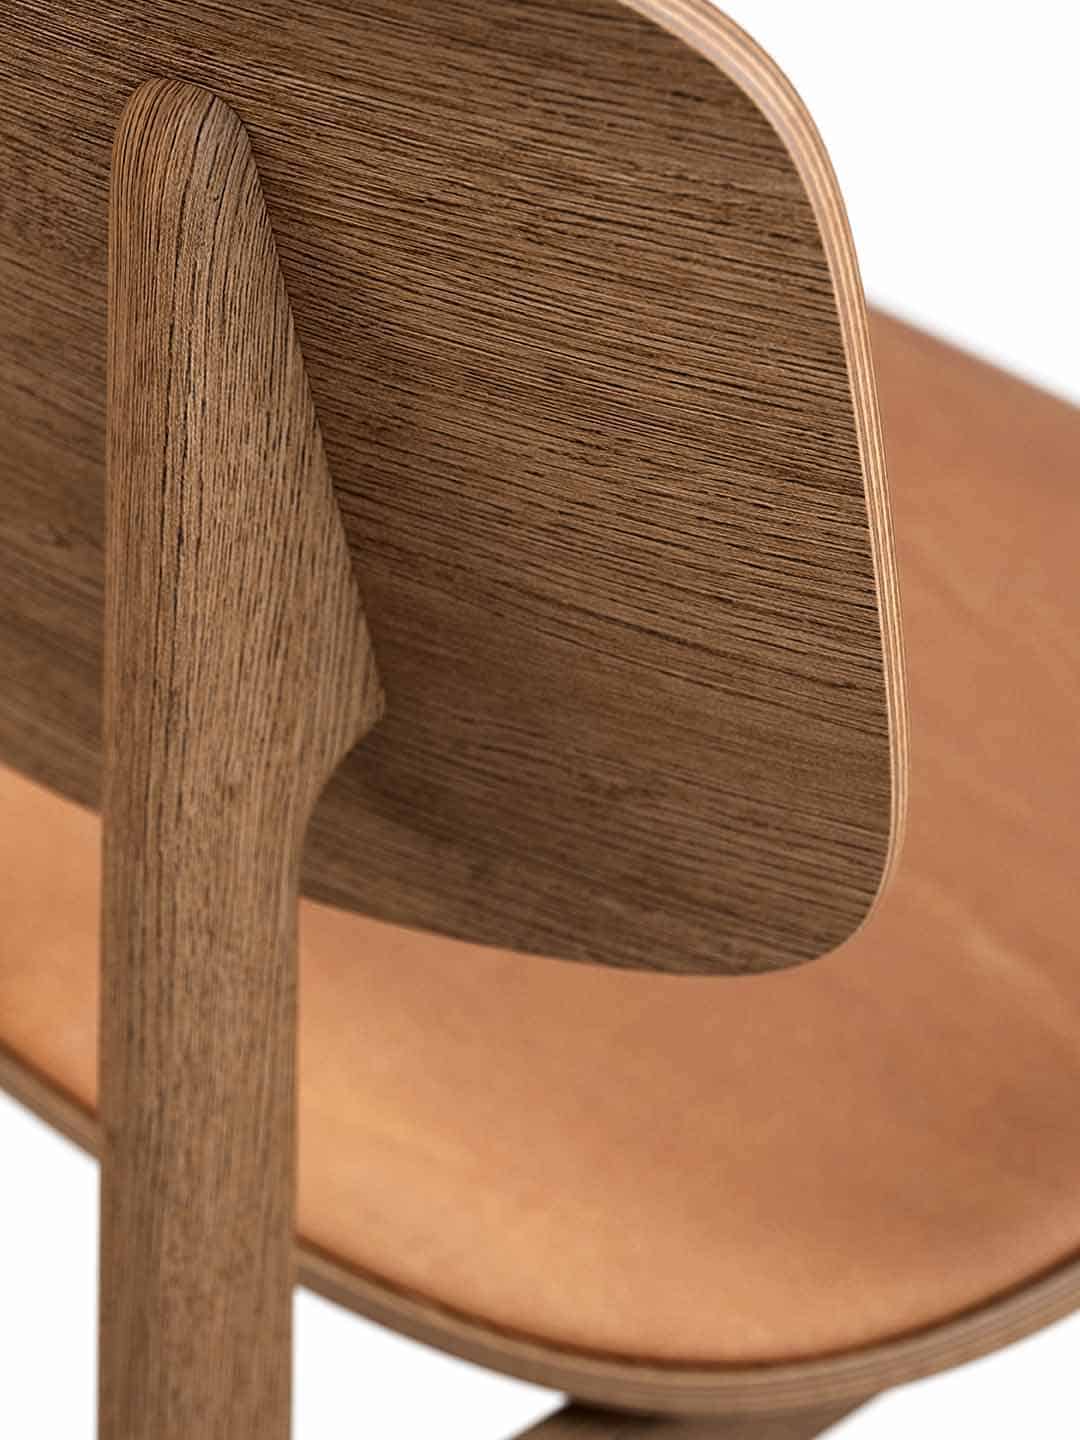 Оригинальный обеденный стул NORR11 NY11 из дымчатого дуба с кожаным сиденьем